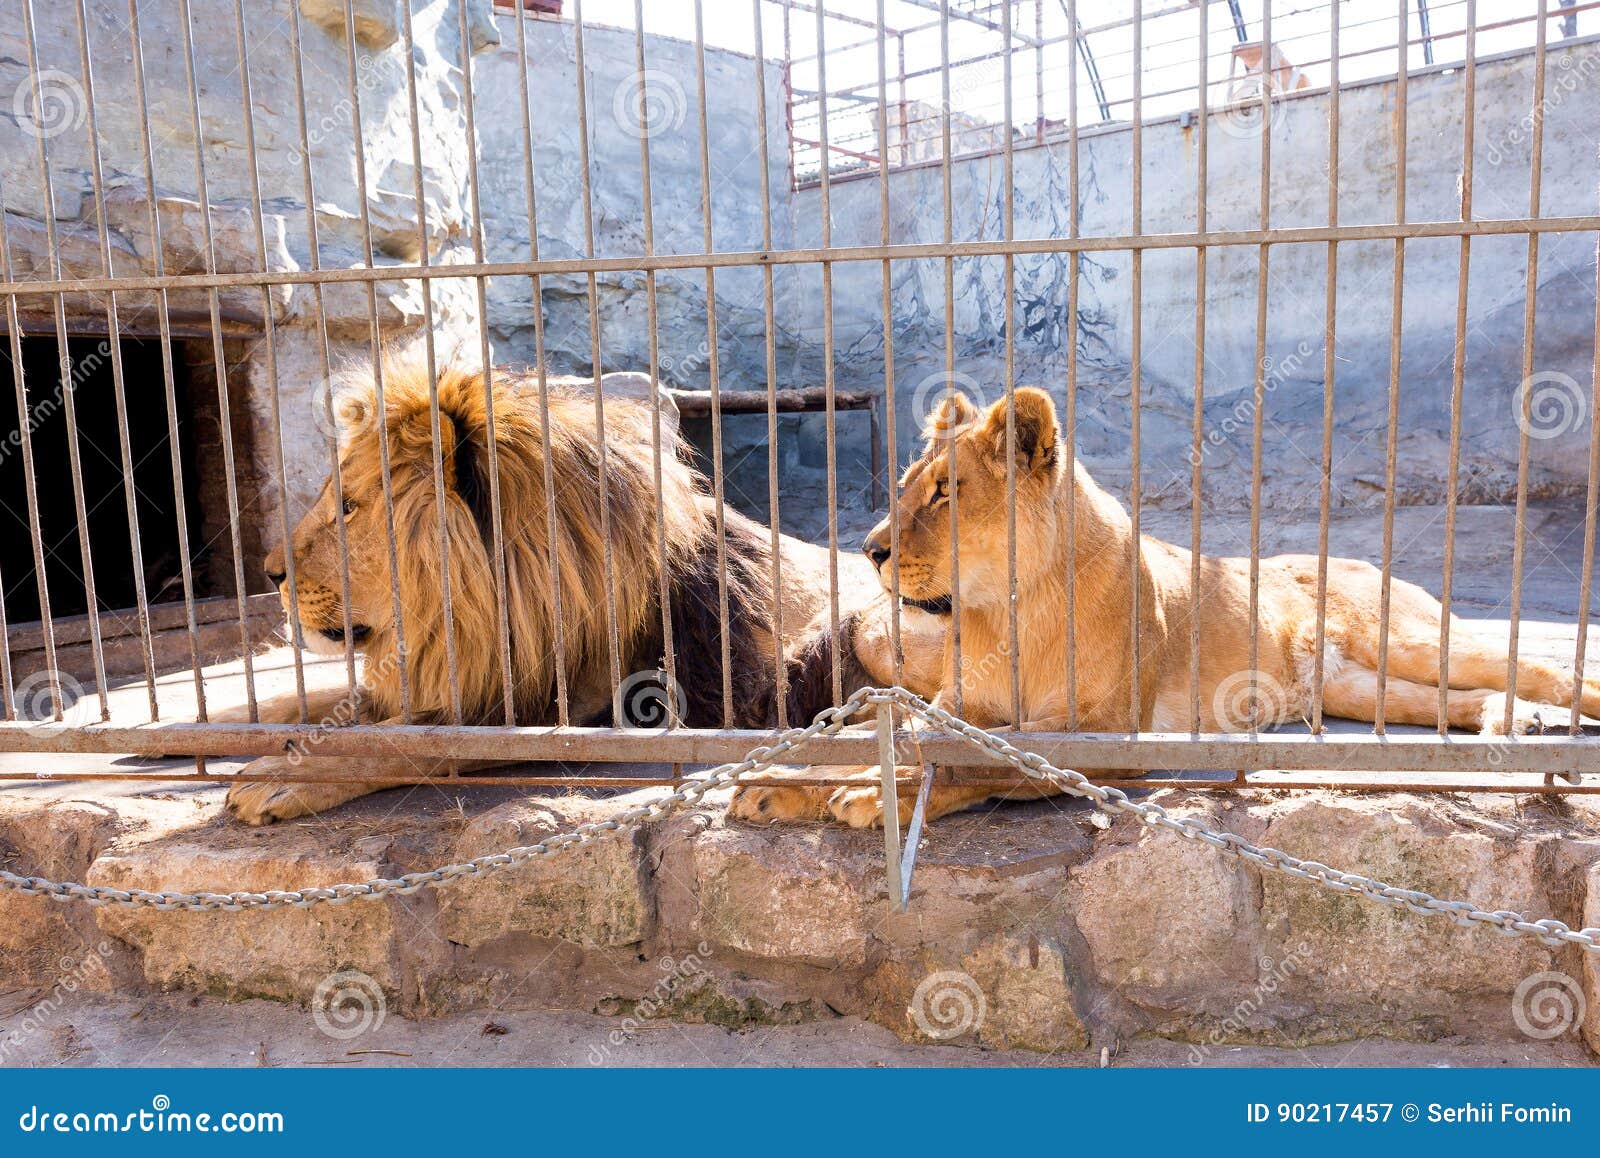 Ein Paar Lowen In Der Gefangenschaft In Einem Zoo Hinter Gittern Energie Und Angriff Im Kafig Stockbild Bild Von Gittern Lowen